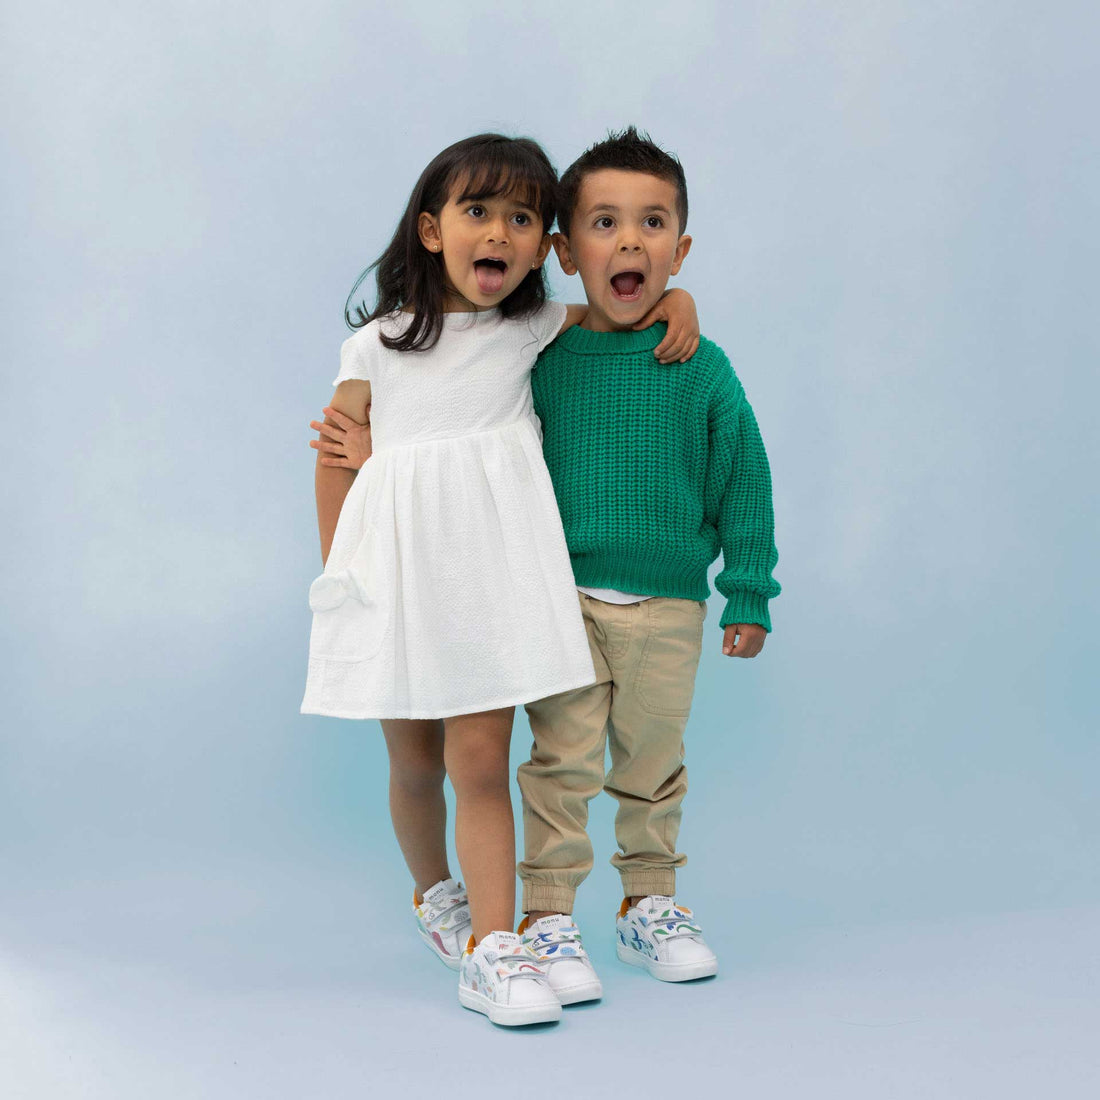 Tenis Monu Mini para niños y niñas: diseño innovador, calidad y comodidad. ¡Envíos a toda Colombia